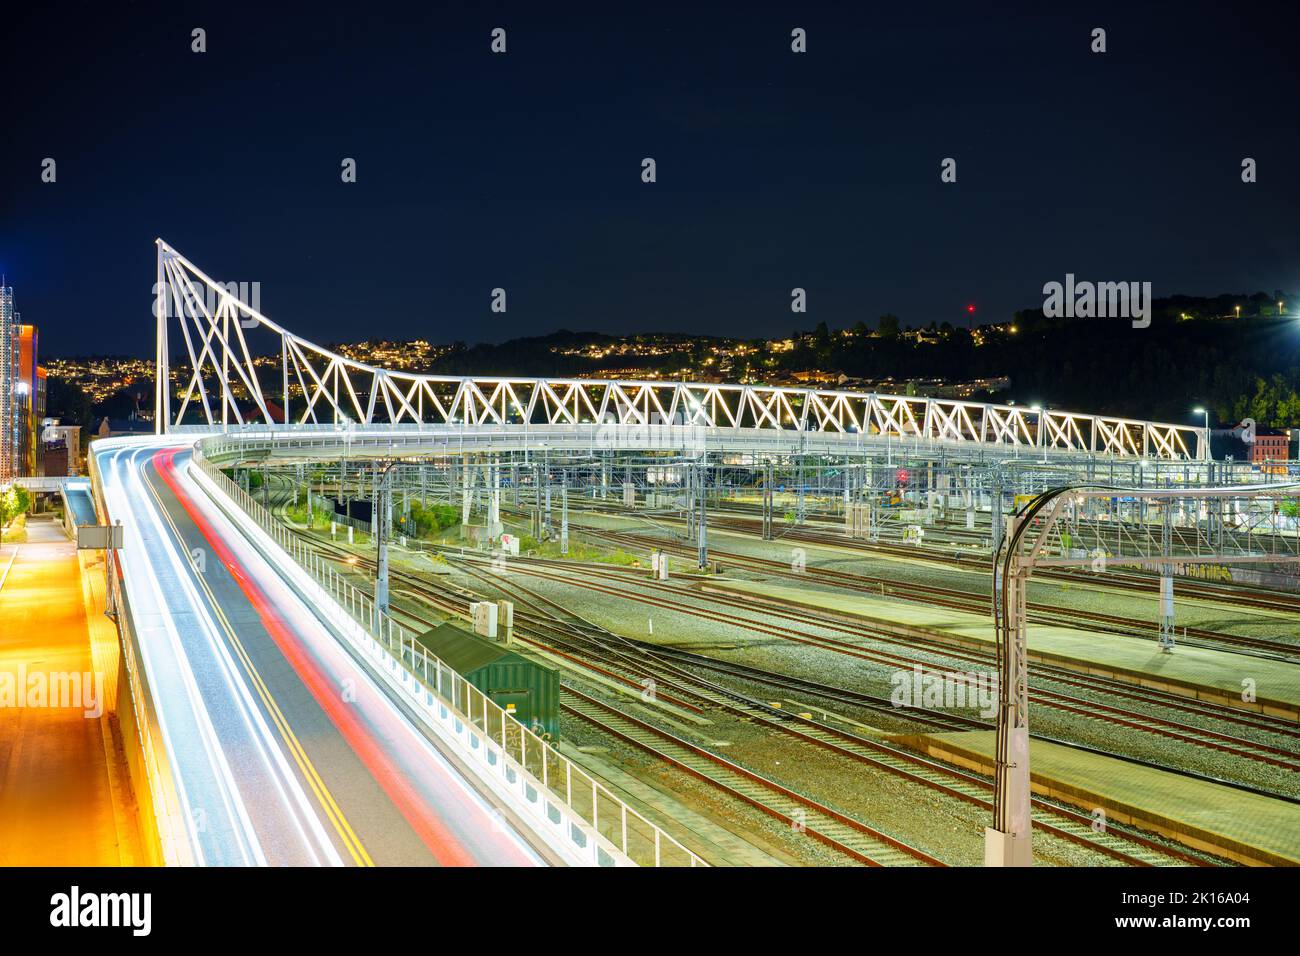 Night photo of Nordenga bridge and train tracks in Oslo Norway Stock Photo